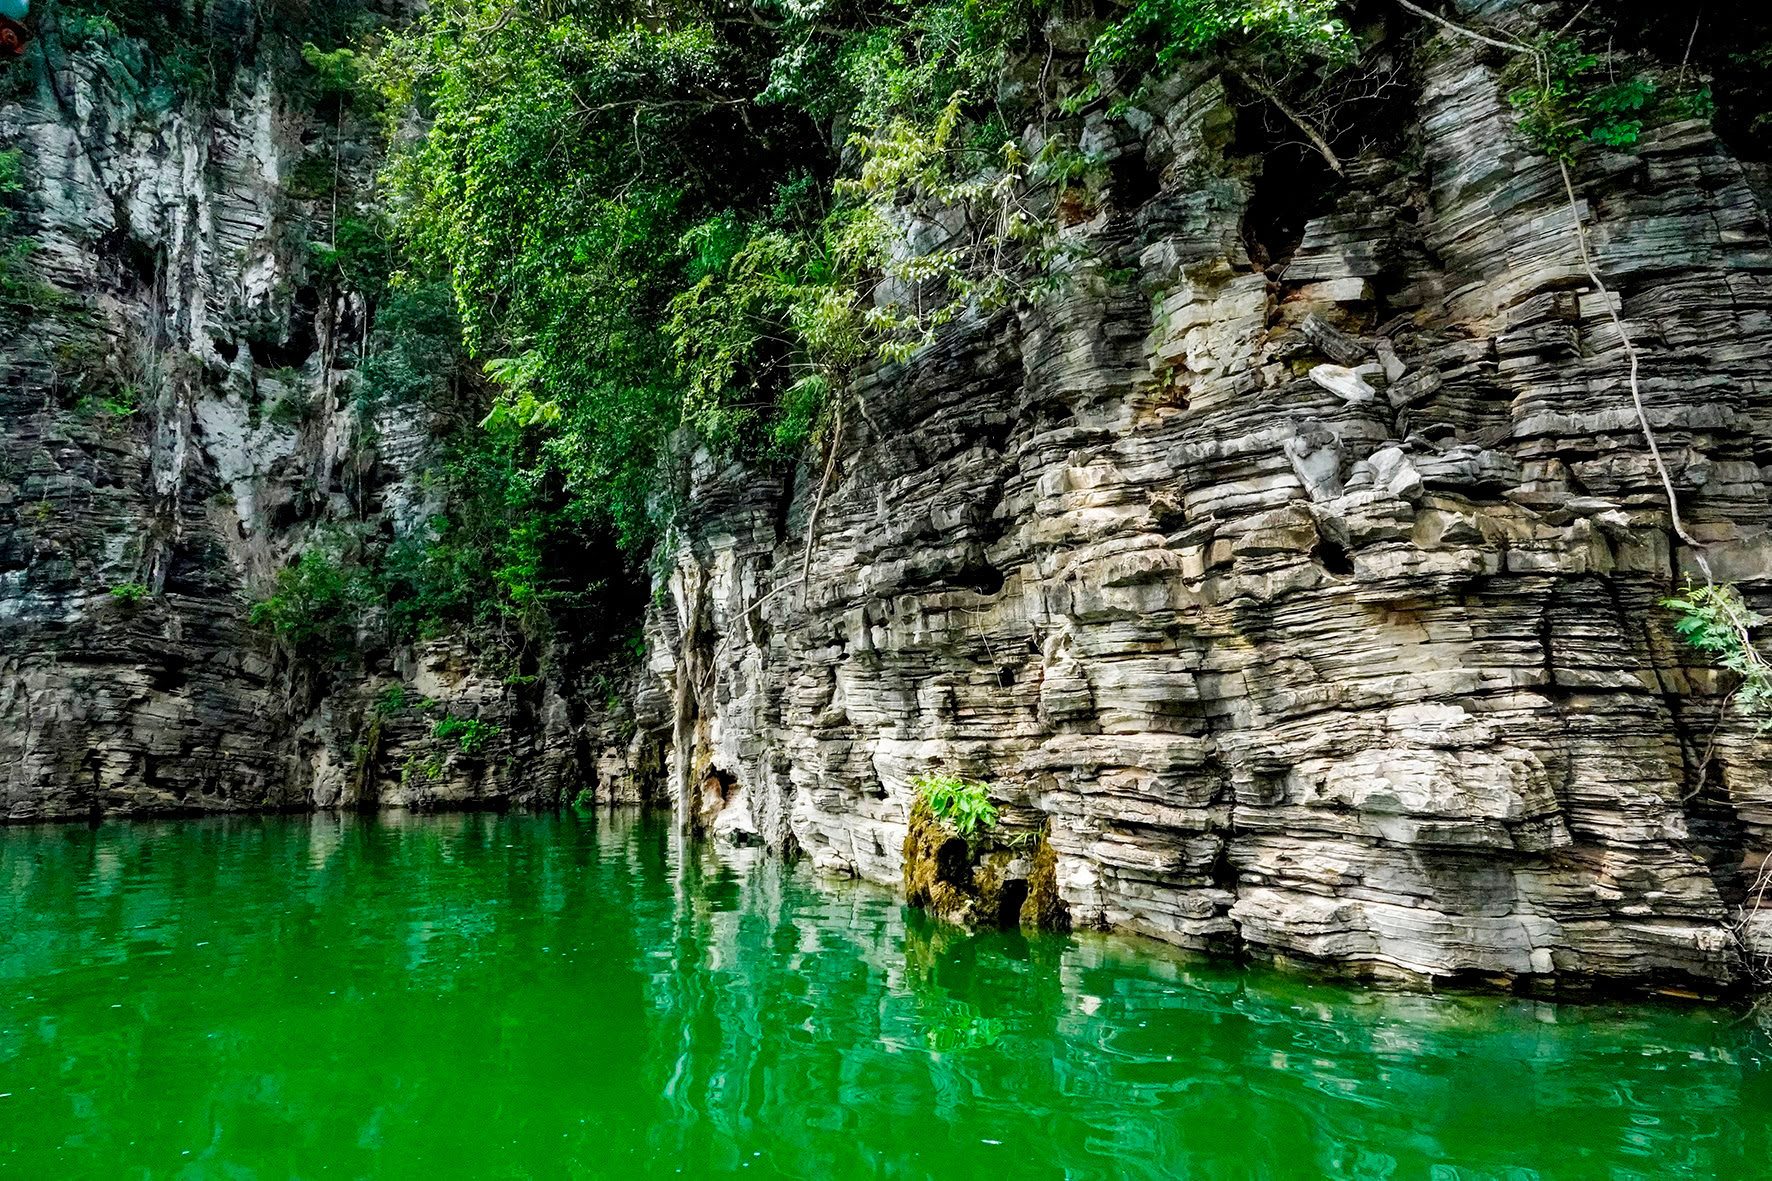 Hồ nước ngọt nhân tạo lớn nhất Tuyên Quang hiện ra đẹp như phim, có ngọn thác đổ, rừng nguyên sinh - Ảnh 7.